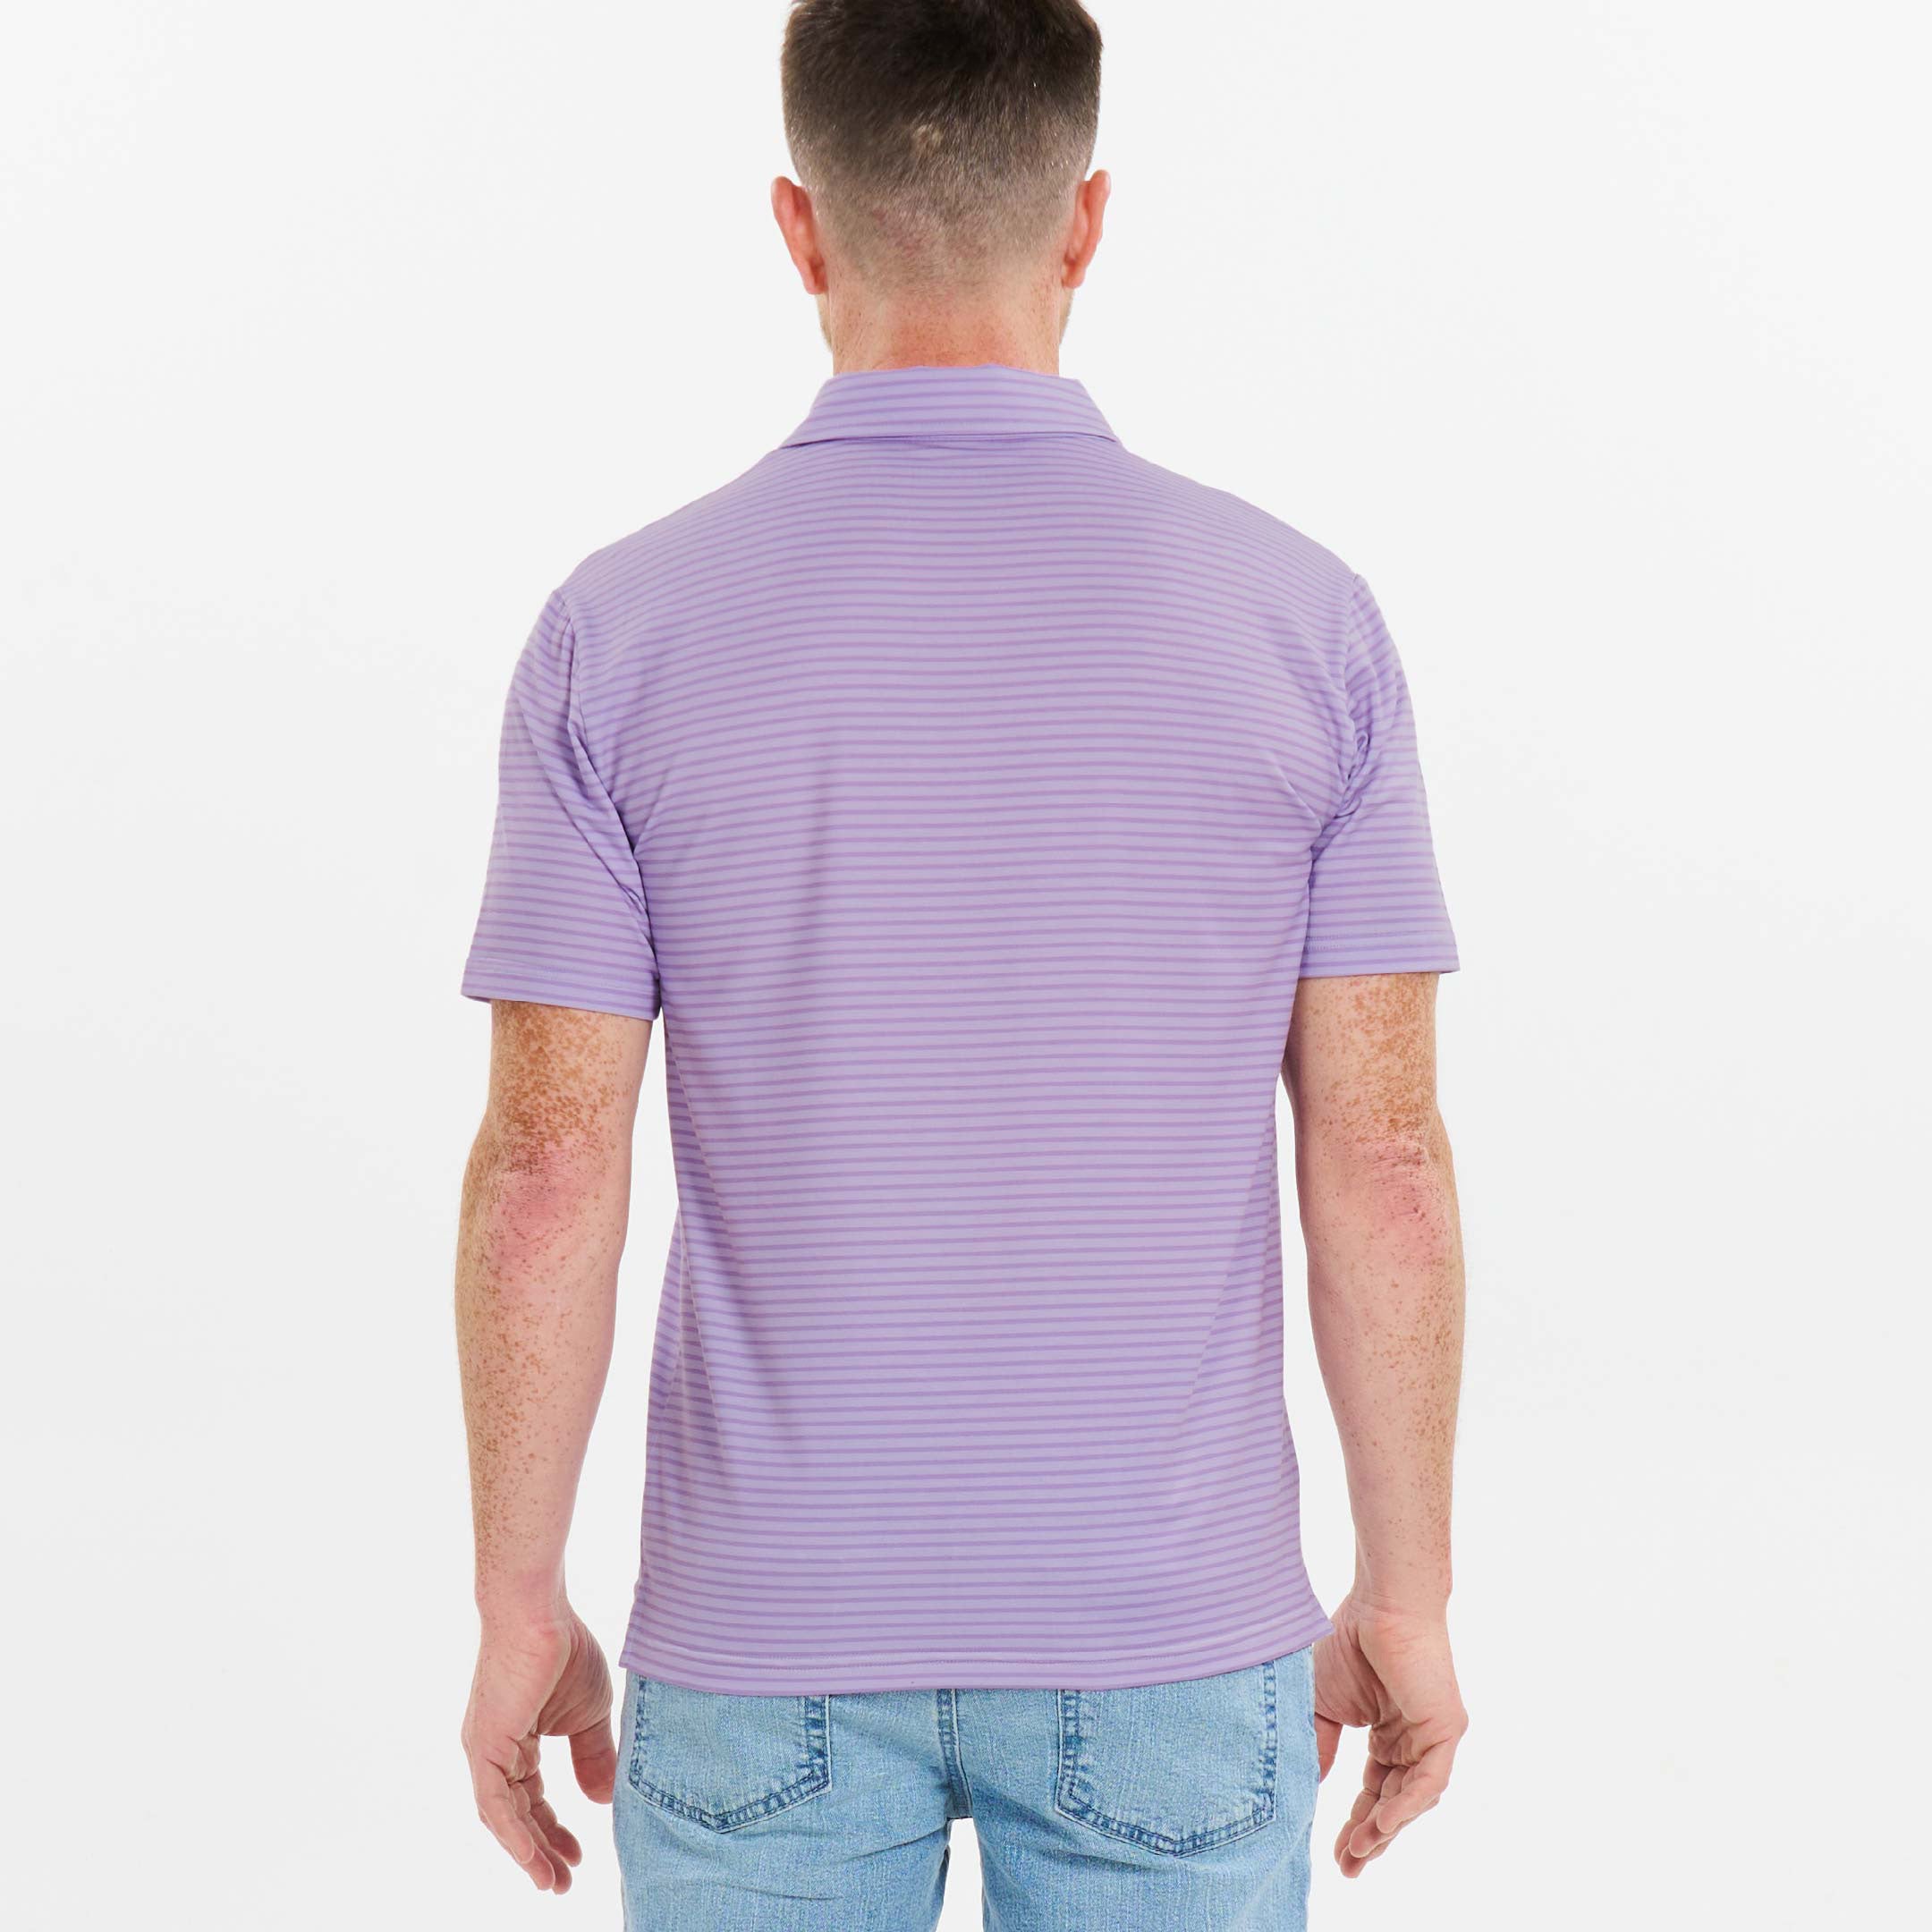 Ash & Erie Concord Stripes Tech Polo Shirt for Short Men   Tech Polo Shirt